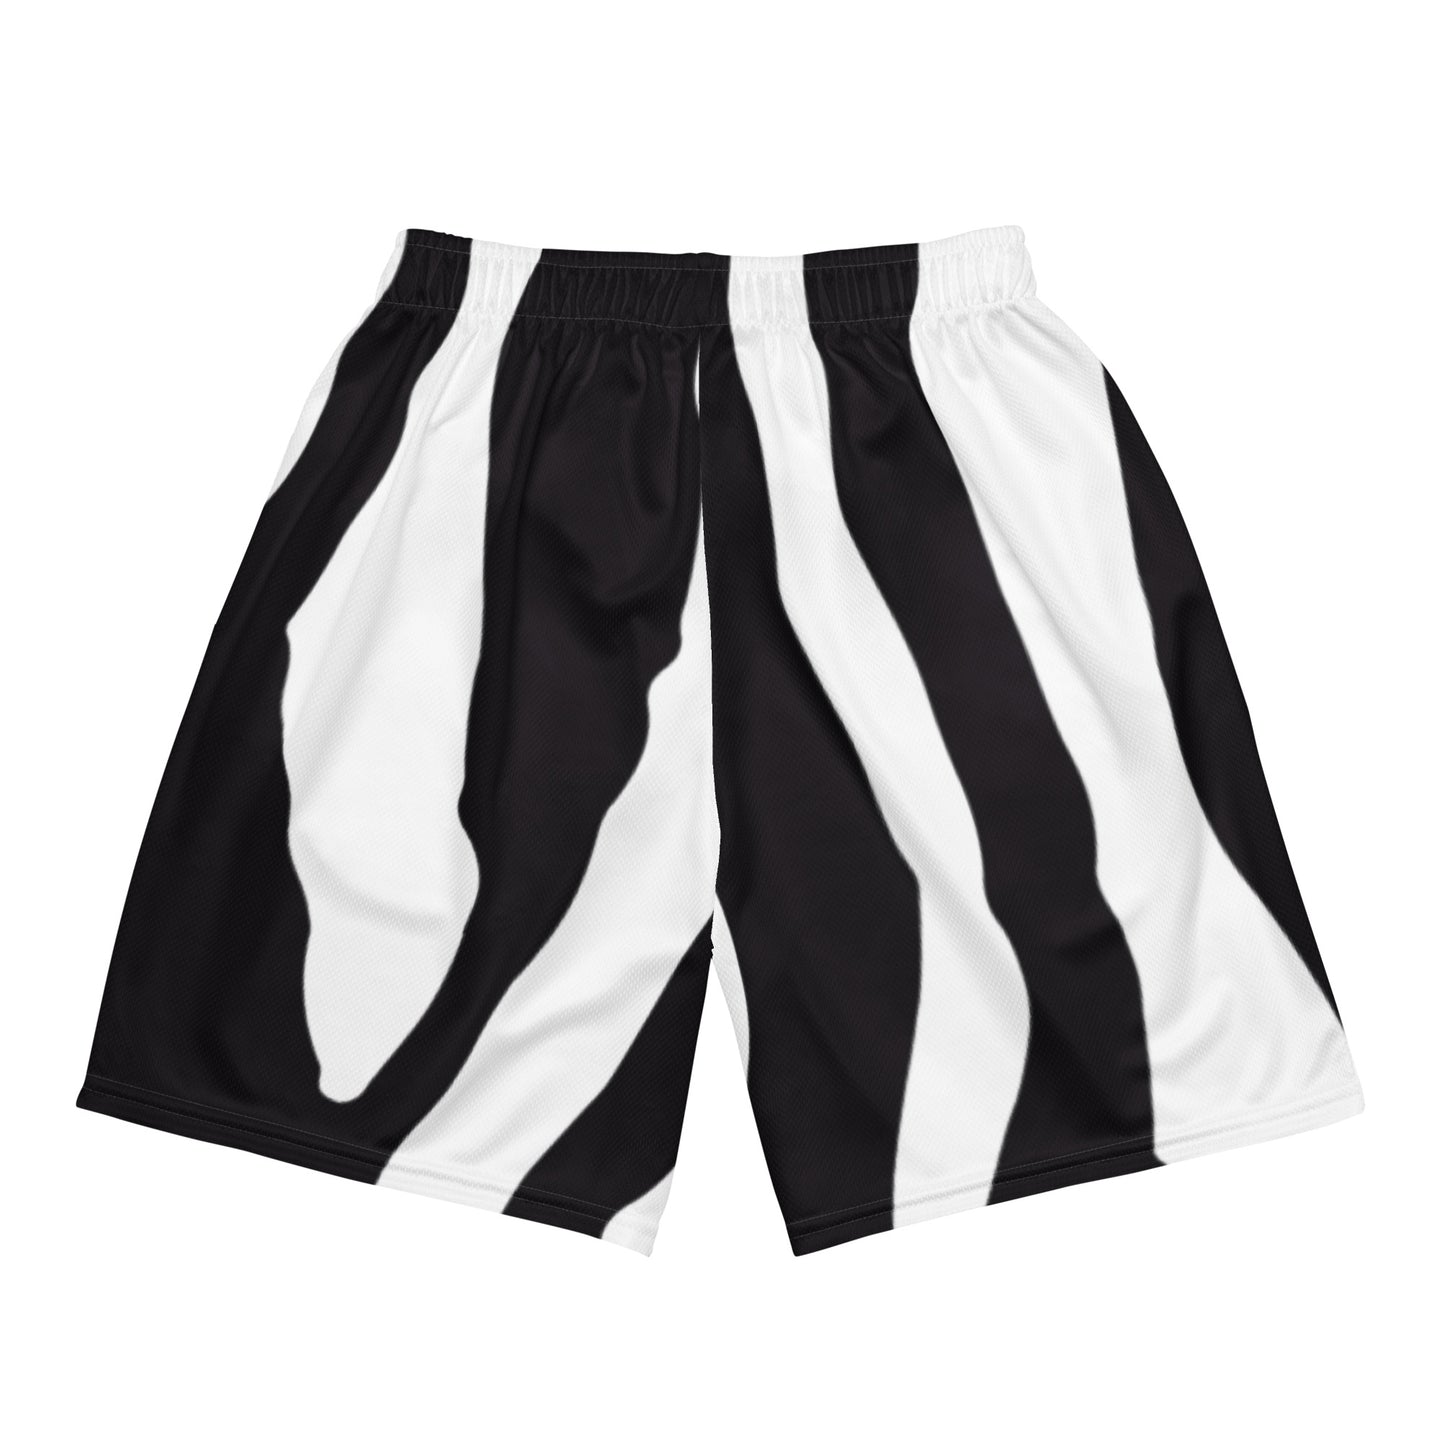 Mesh Shorts In Black Zebra